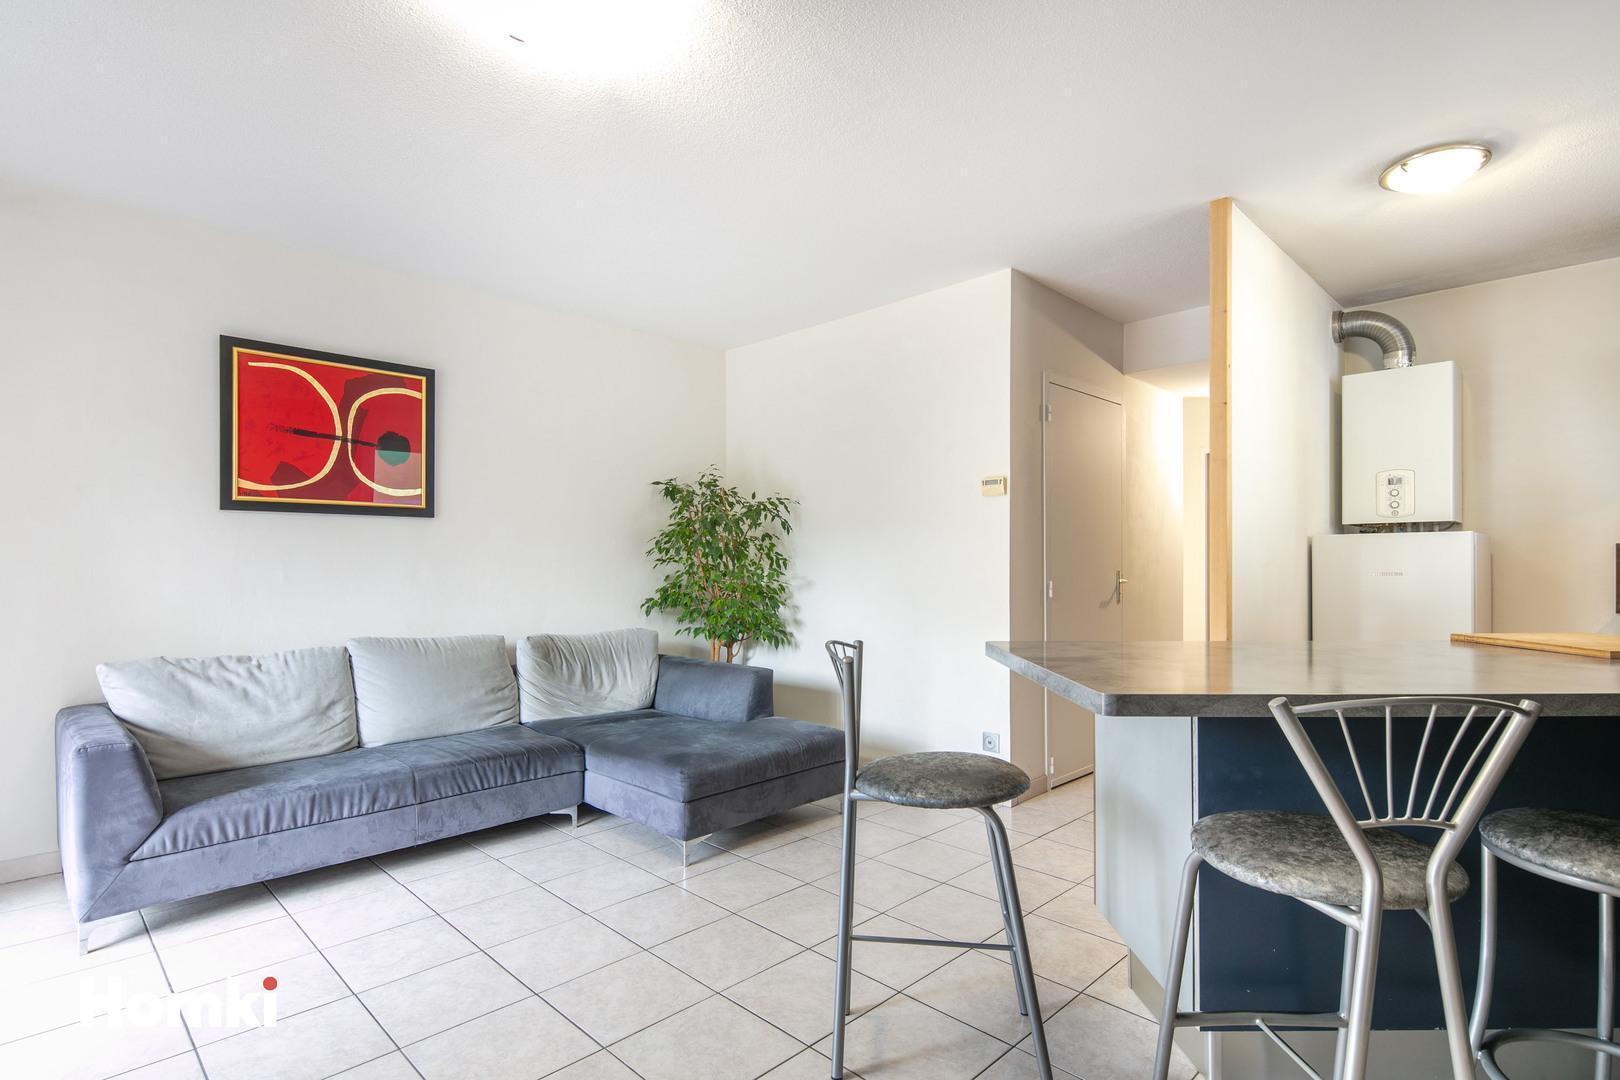 Homki - Vente Appartement  de 61.0 m² à Grenoble 38000